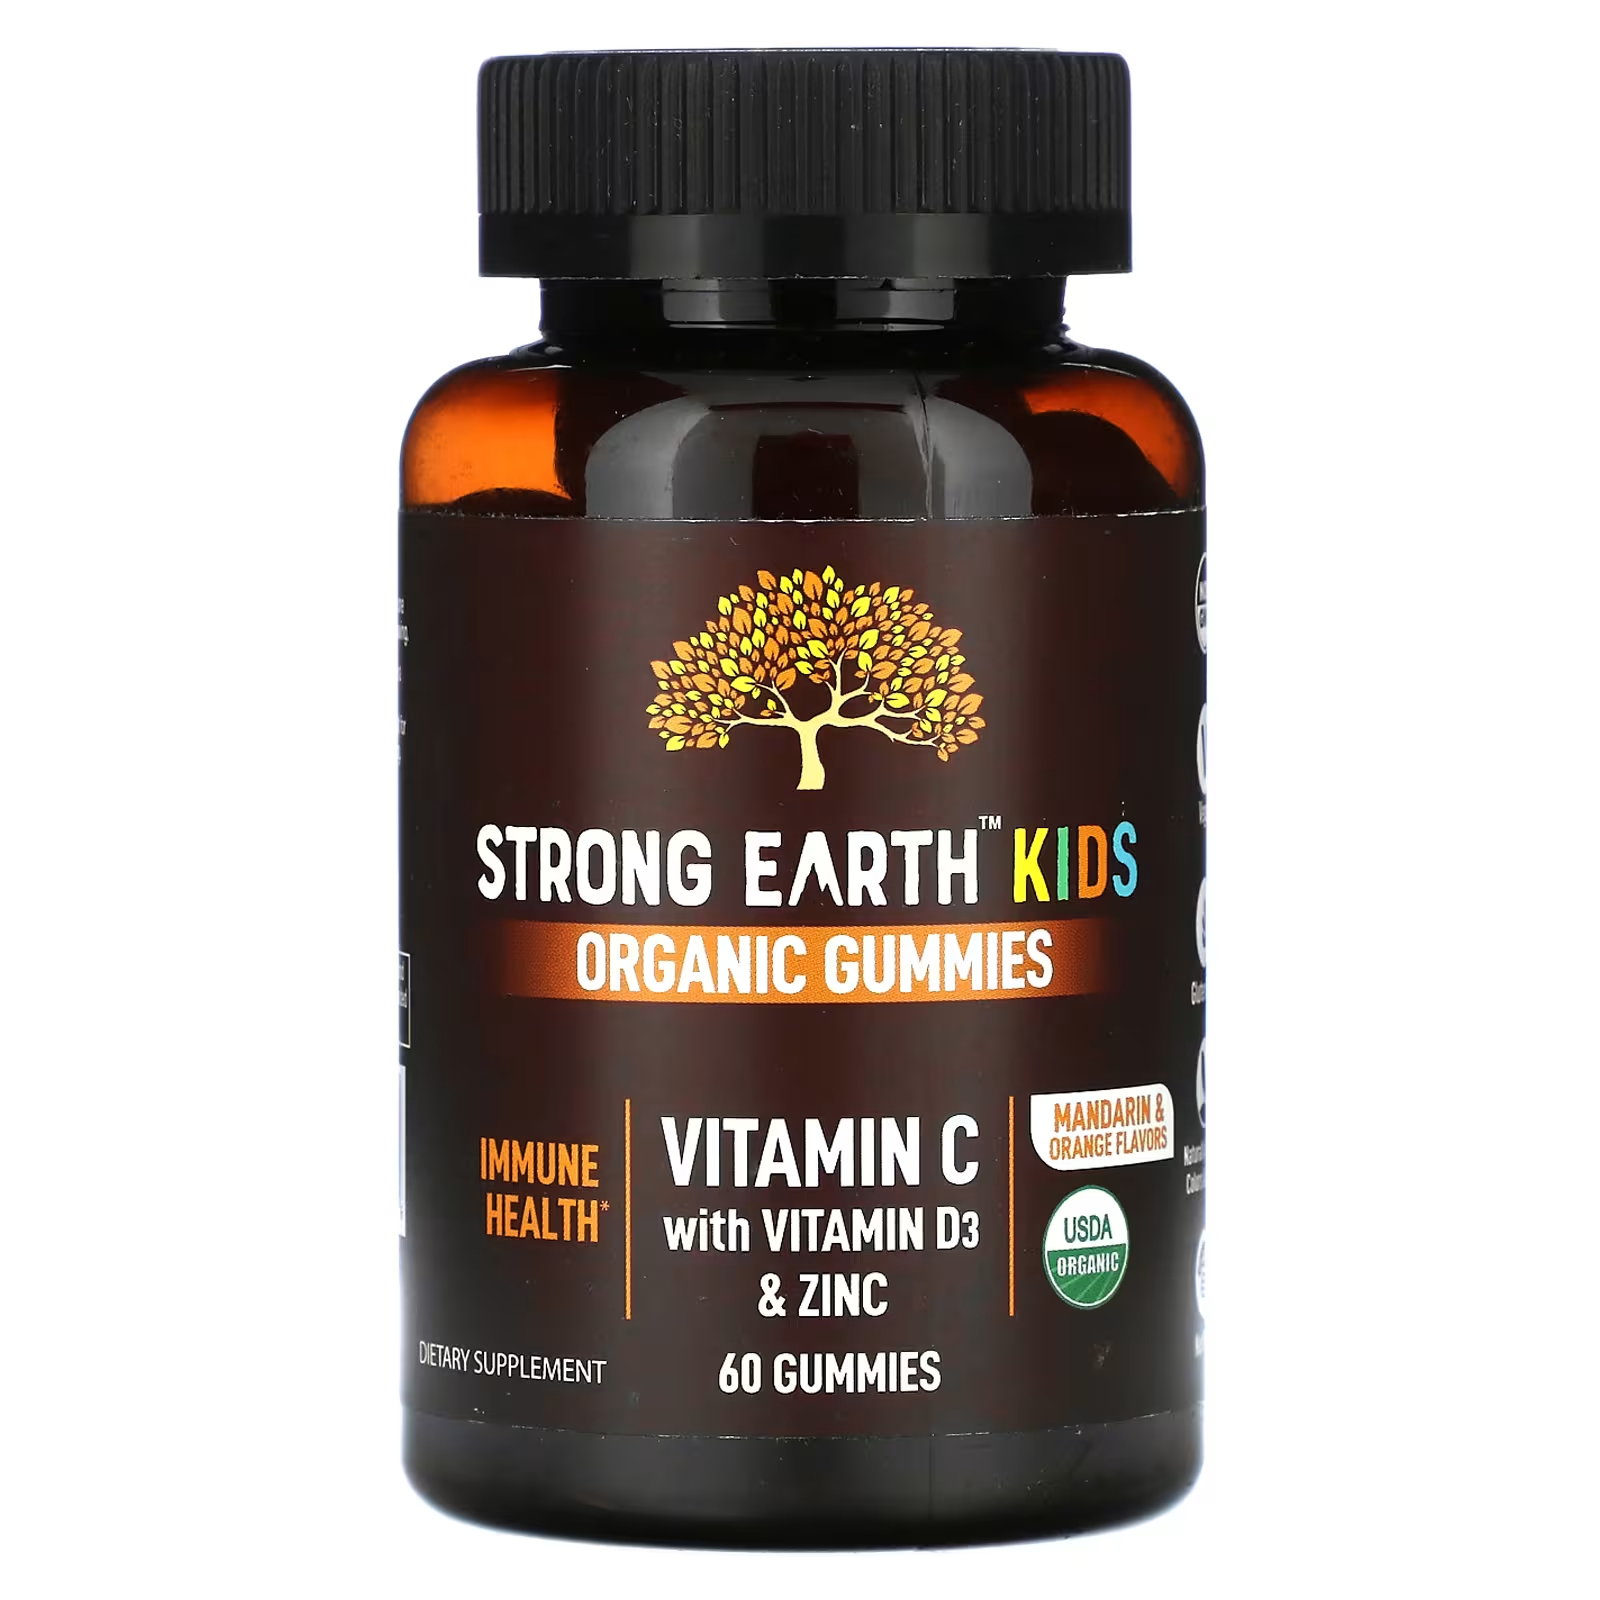 Органические жевательные конфеты YumV's Strong Earth Kids с витамином С, витамином D3 и цинком, мандарином и апельсином, 60 жевательных конфет